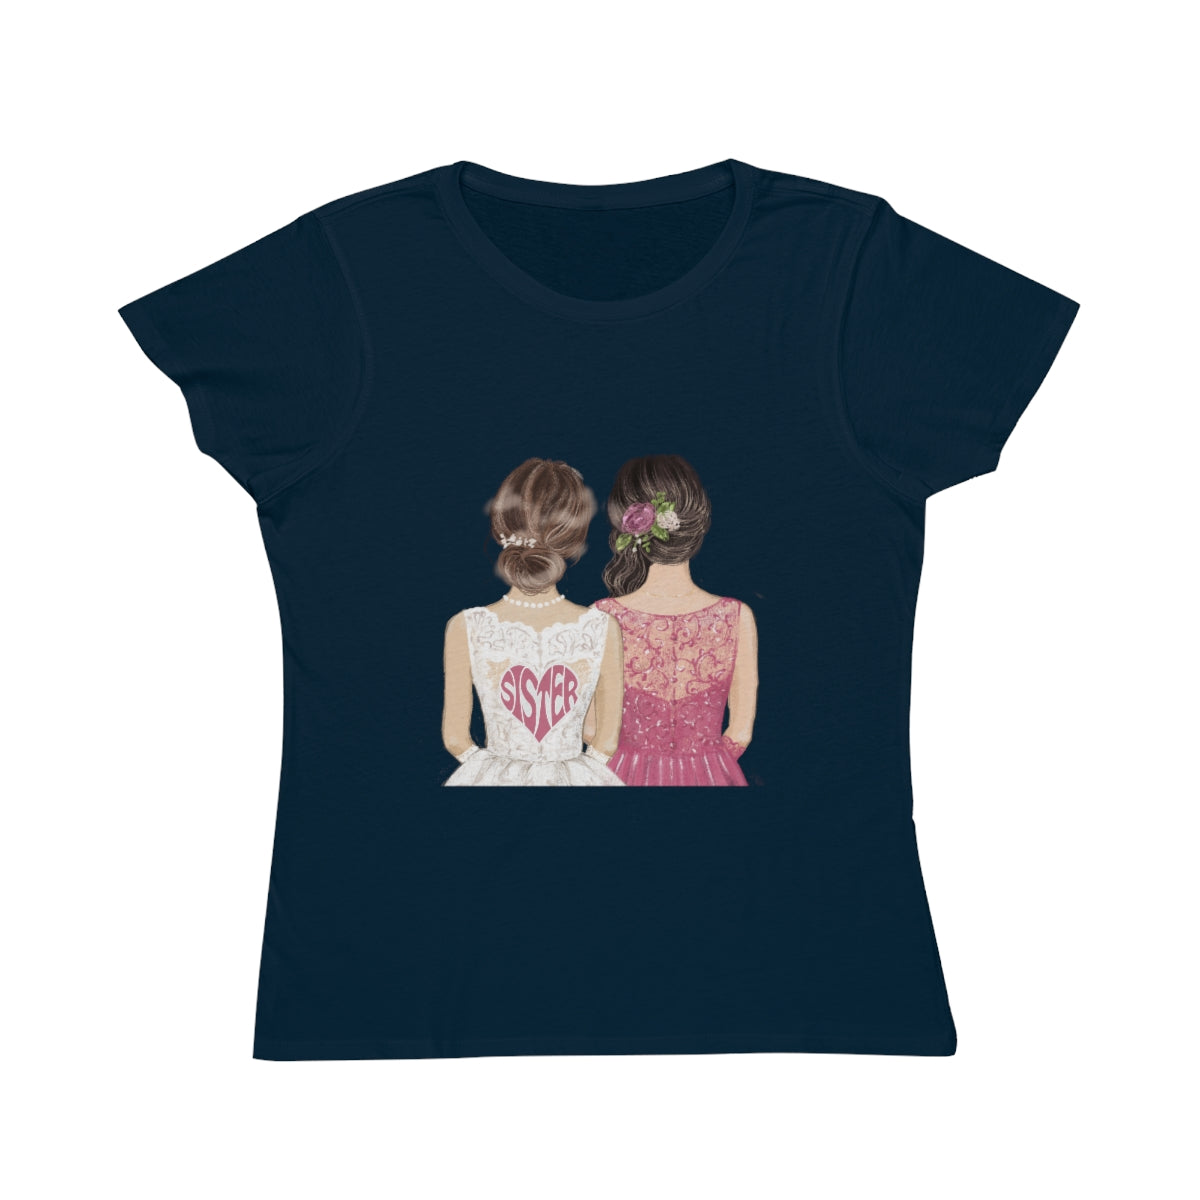 SISTER SHIRT, Organic Women's Classic T-Shirt, Echo Shirt for Women, Gift for Sisters